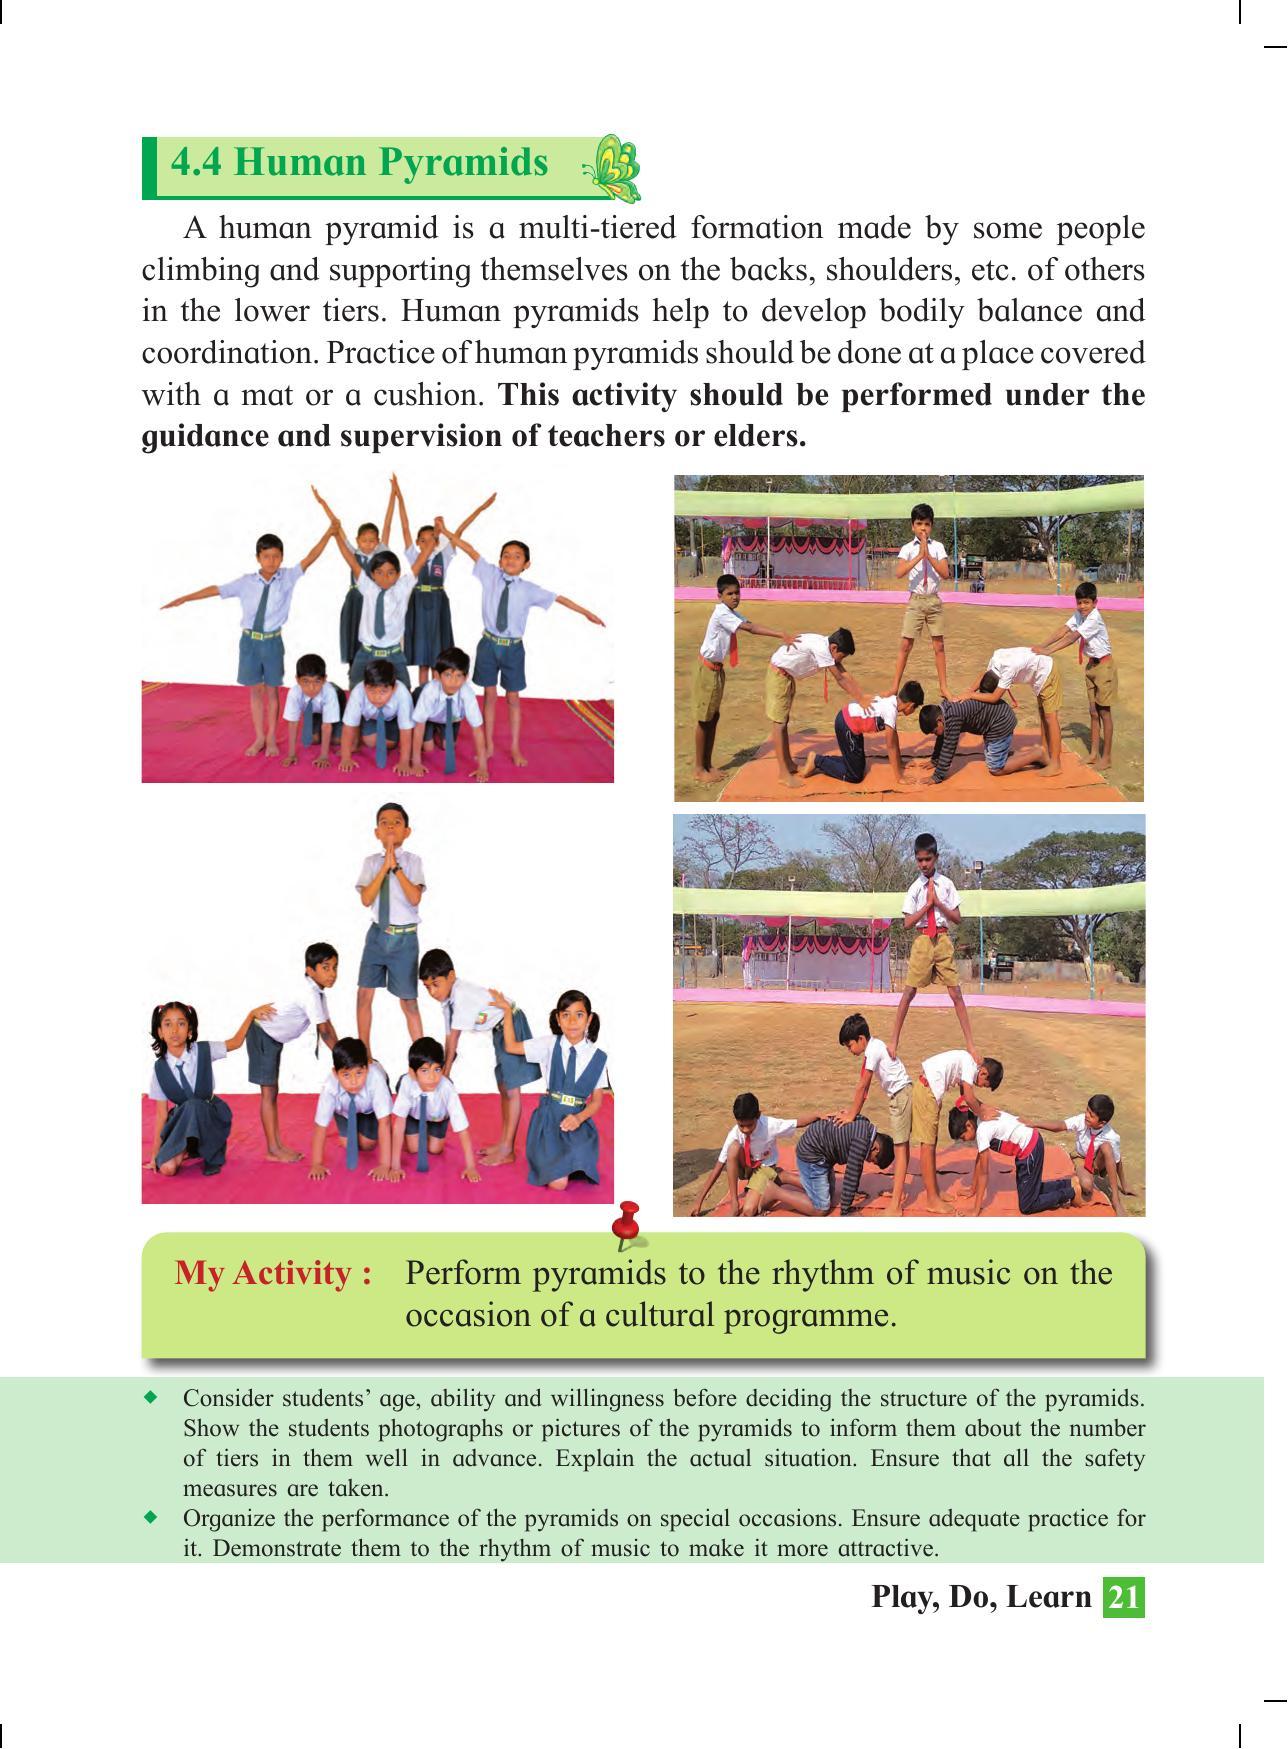 Maharashtra Board Class 4 Play Do Learn (English Medium) Textbook - Page 30